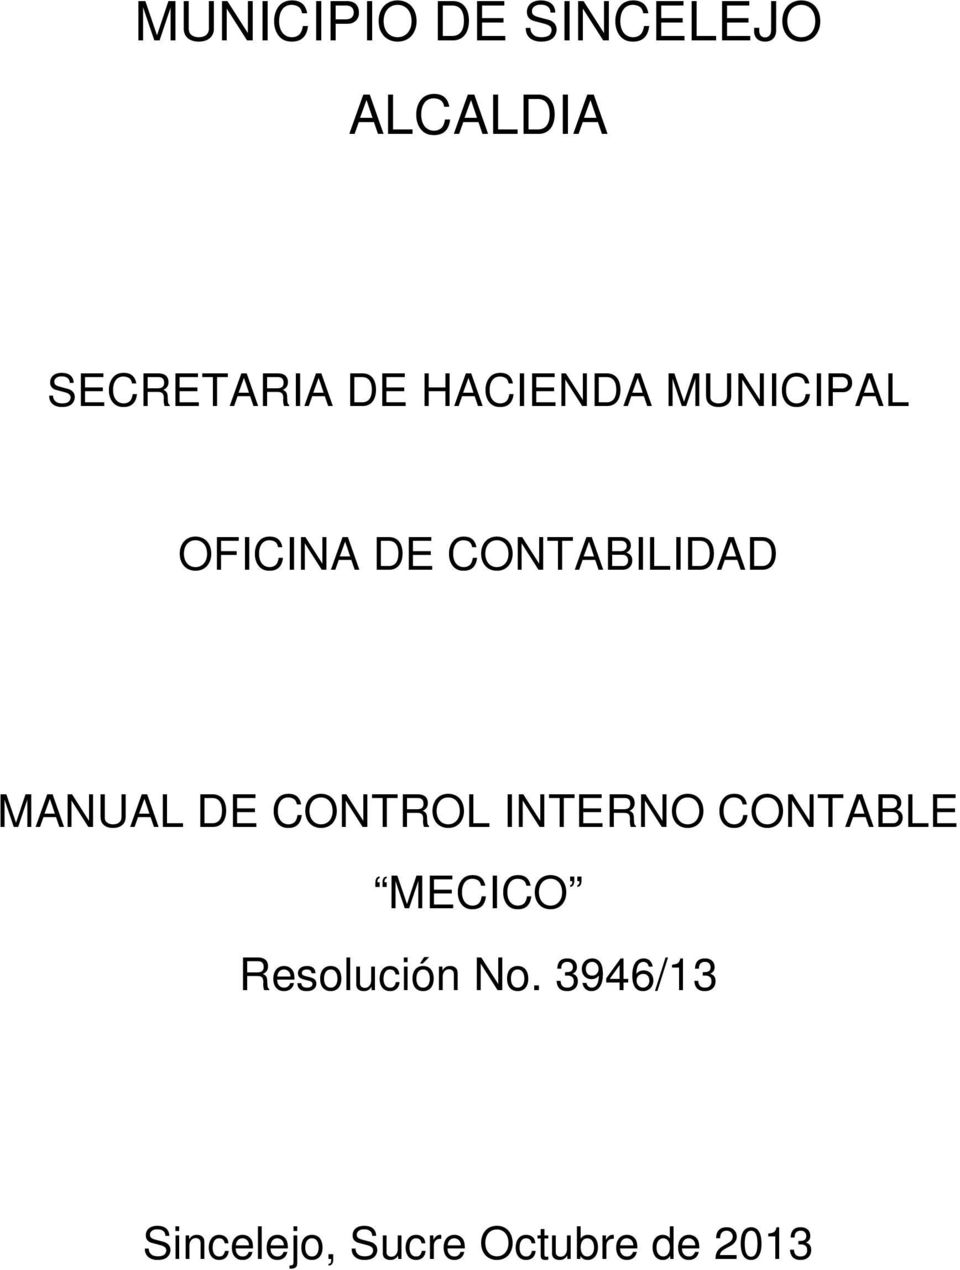 CONTABILIDAD MANUAL DE CONTROL MECICO